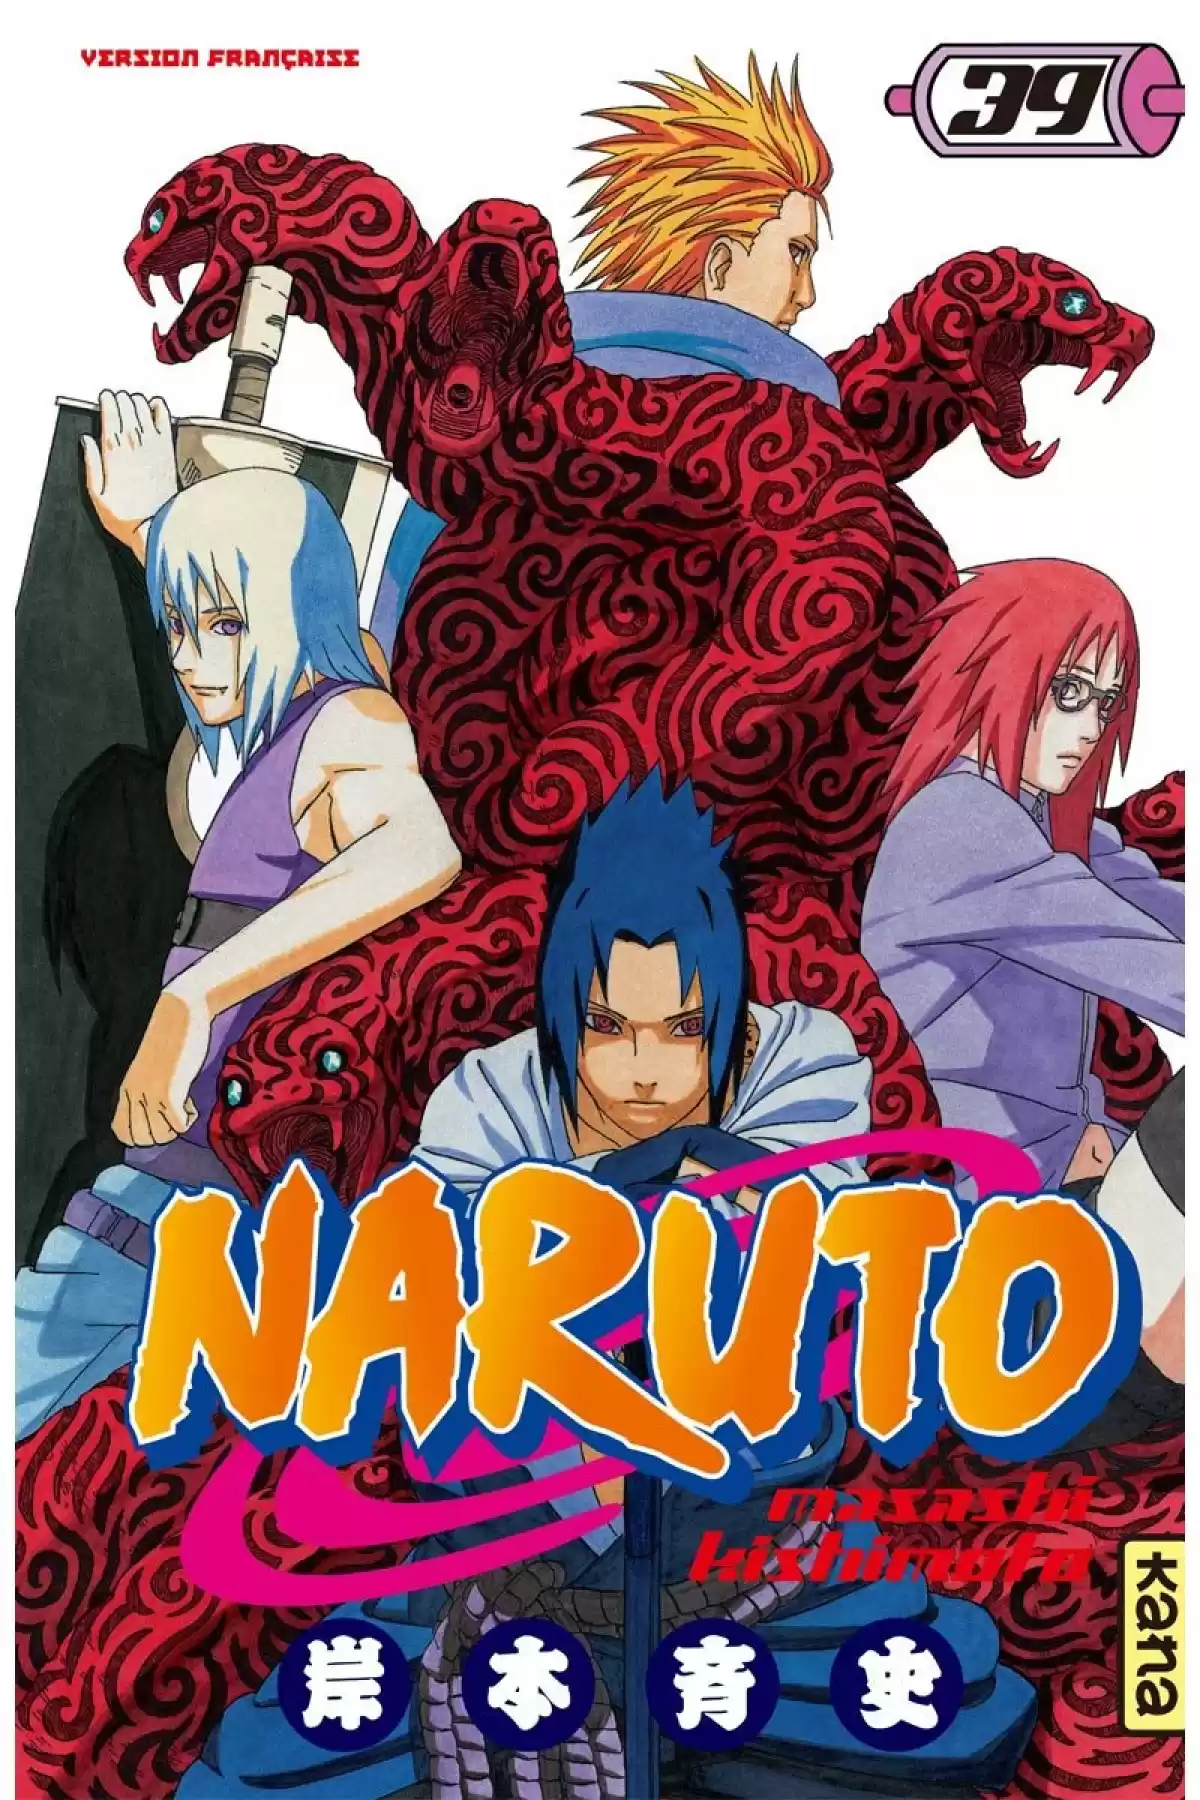 Naruto Volume 39 page 1